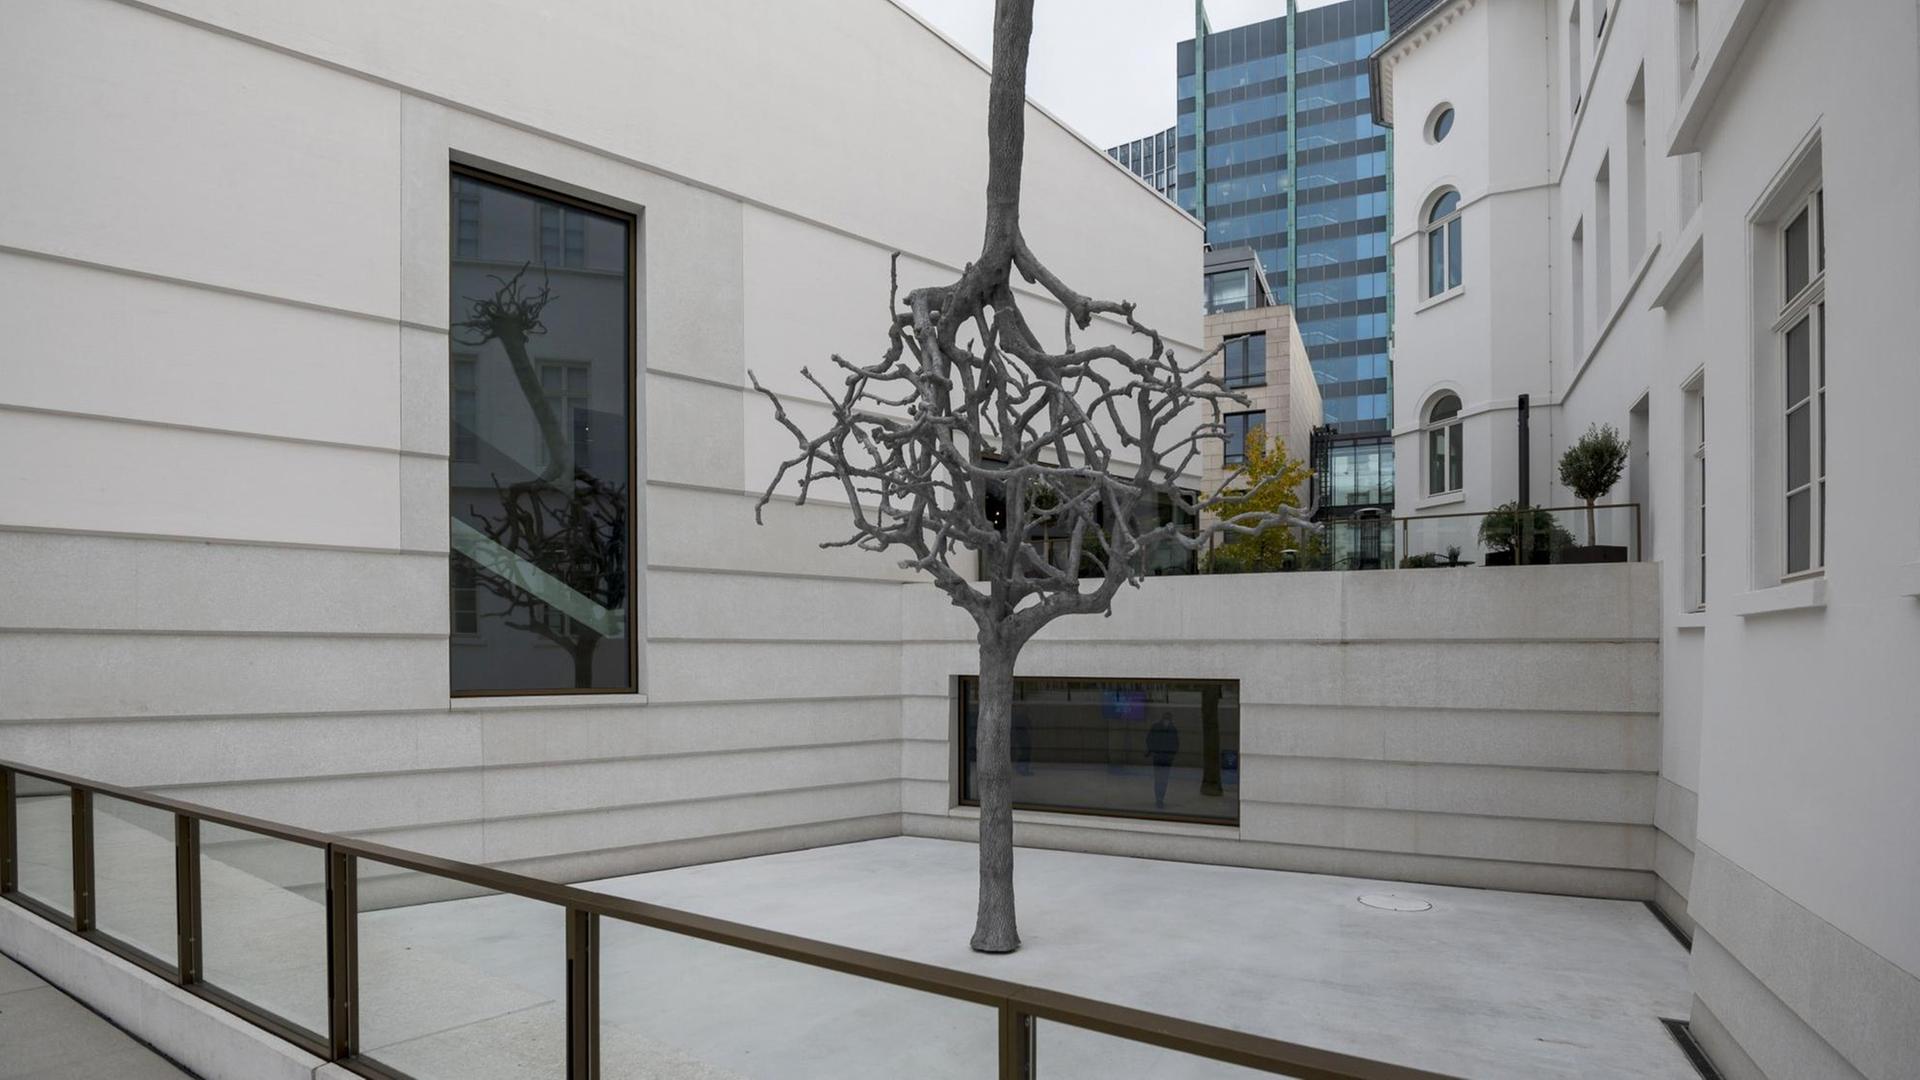 Die aus zwei Bäumen bestehende Skulptur "Untitled" von Ariel Schlesinger bestimmt den Innenhof des Neuen Jüdischen Museum in Frankfurt am Main.